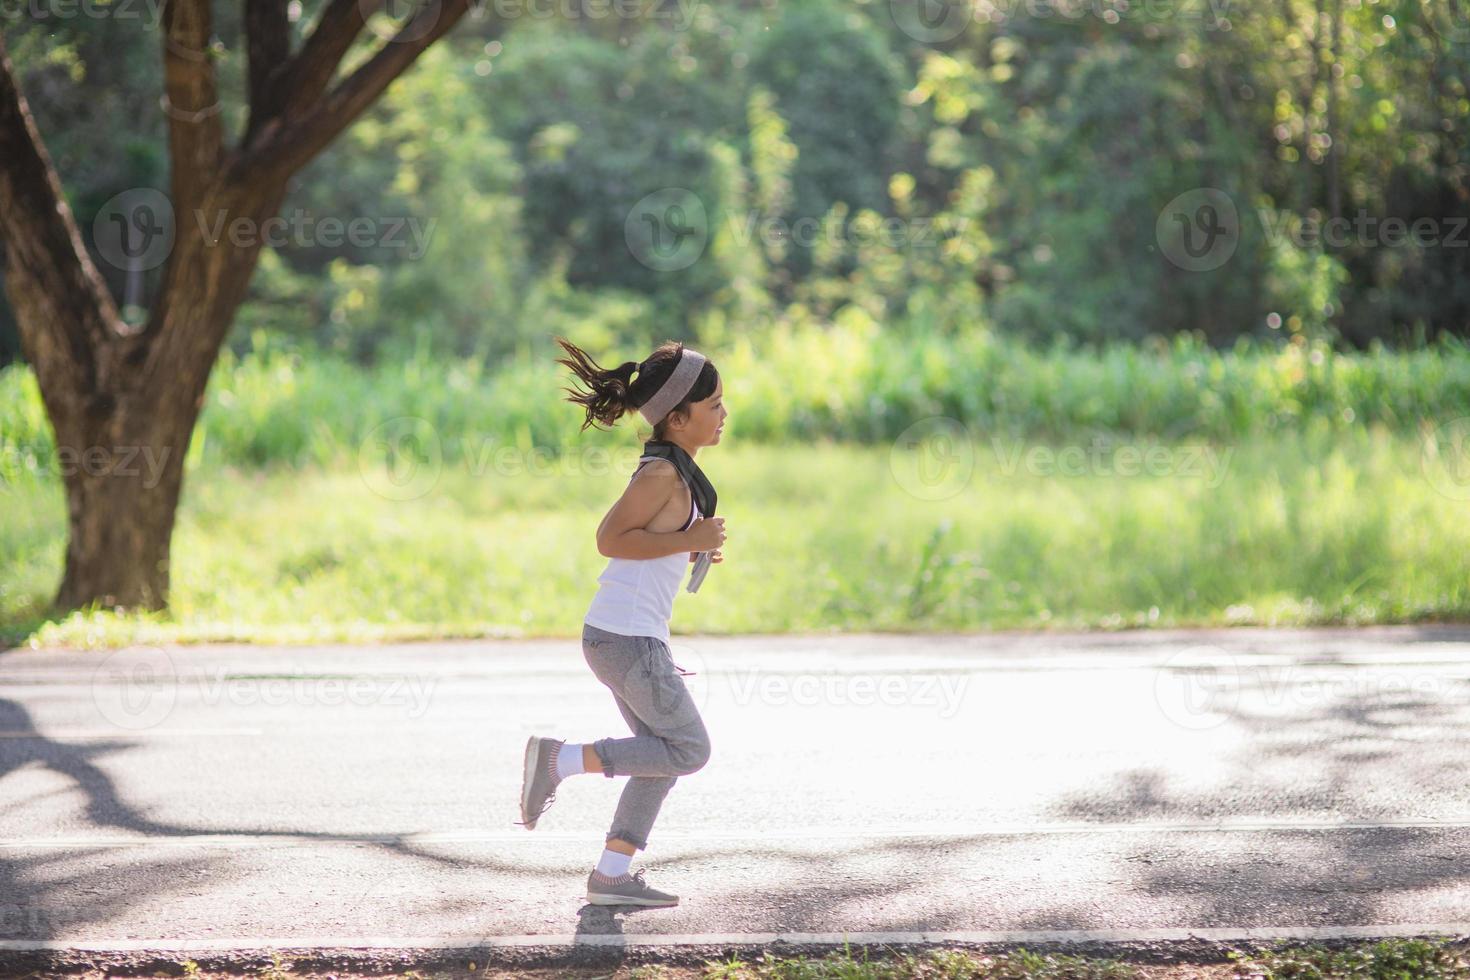 menina criança feliz correndo no parque no verão na natureza. clarão quente da luz solar. pouco asiático está correndo em um parque. esportes ao ar livre e fitness, exercício e aprendizagem de competição para o desenvolvimento infantil. foto